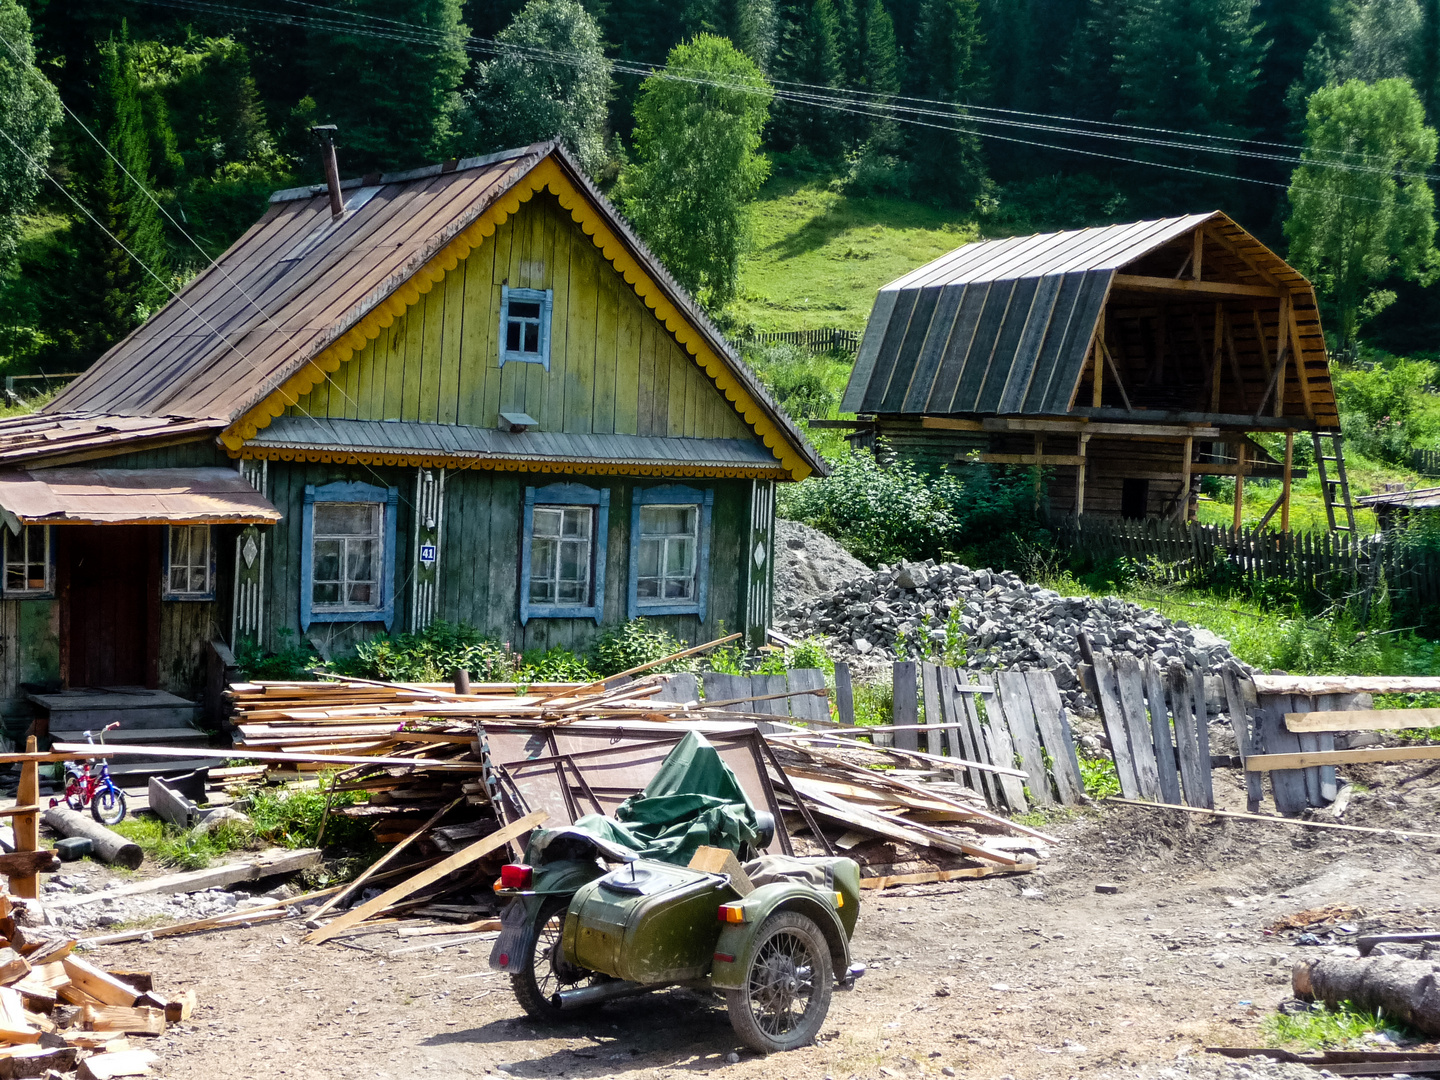 altes russisches Motorrad mit Beiwagen vor Häuschen